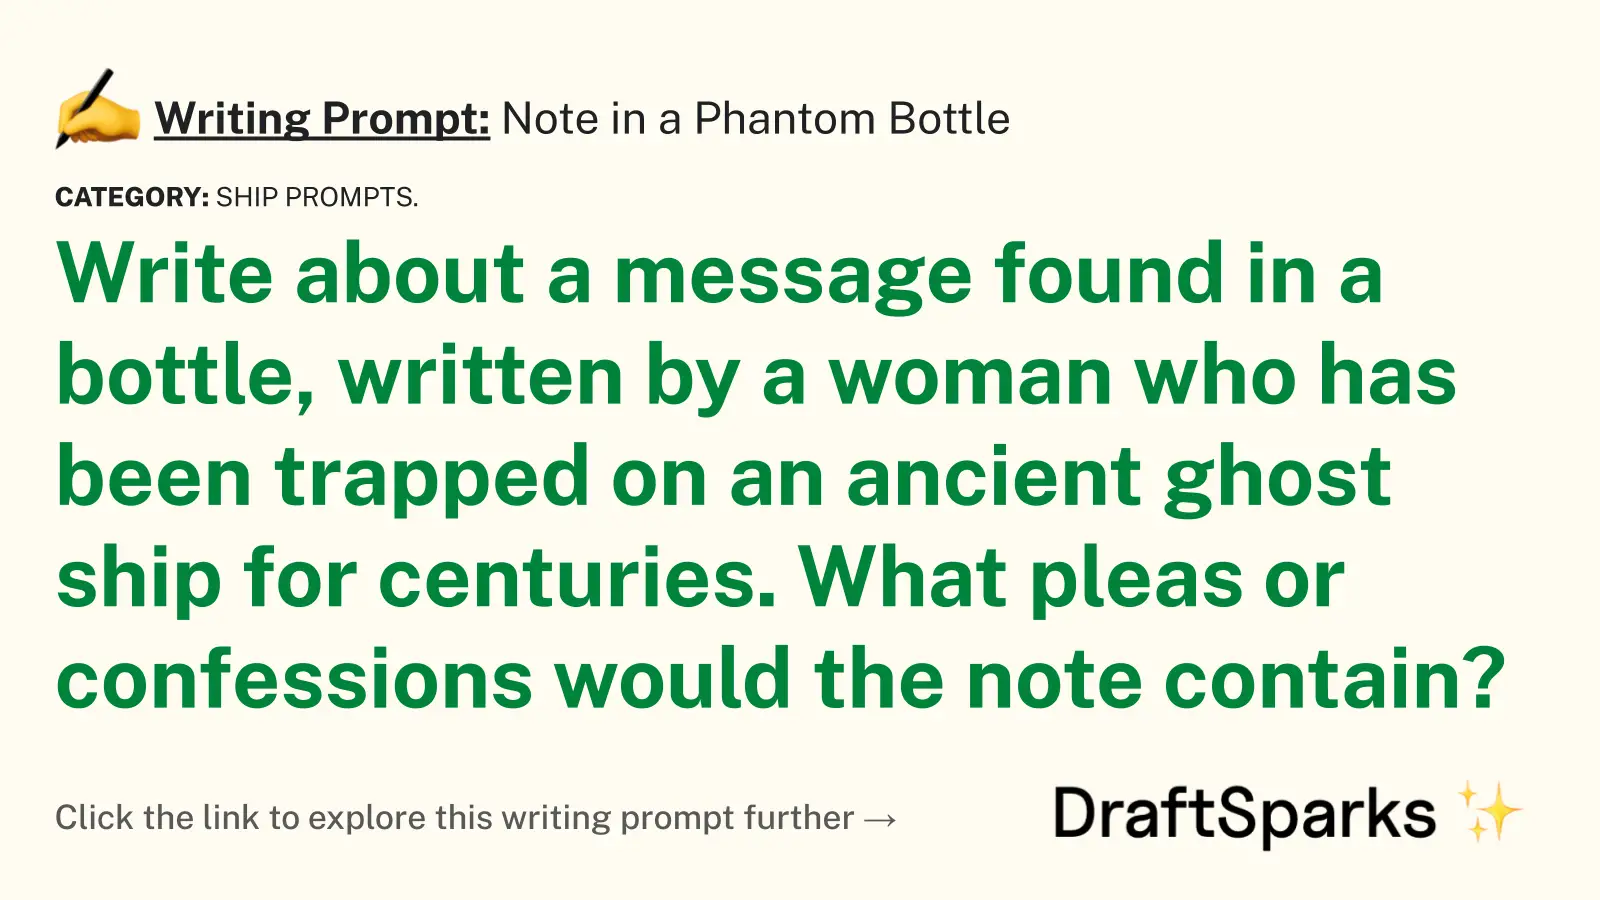 Note in a Phantom Bottle